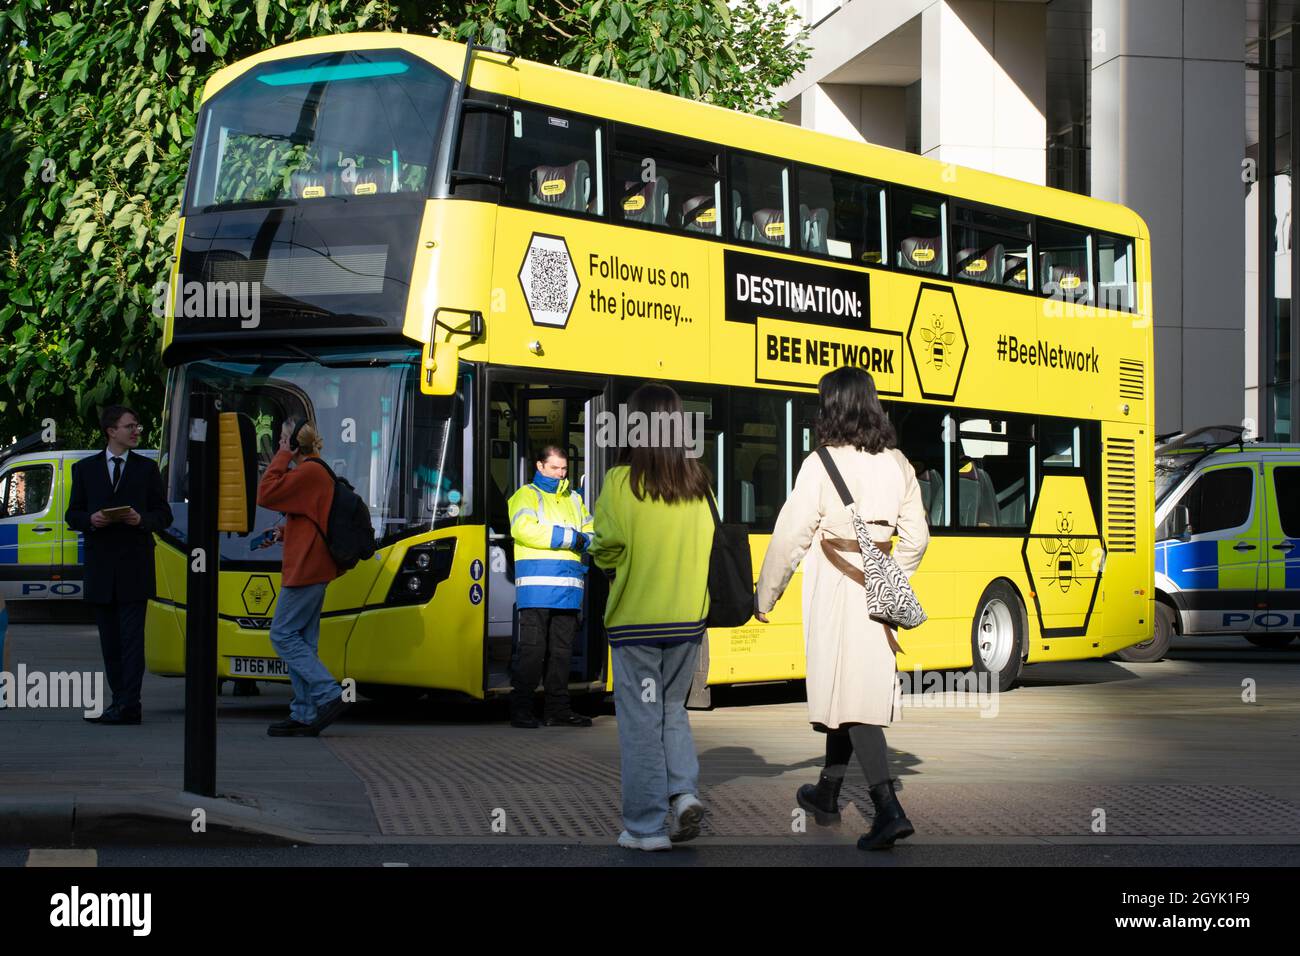 Autobús amarillo de la red de abejas planeada Manchester Reino Unido. Plaza de San Pedro durante la Conferencia de Tory Party. Furgonetas de policía en el fondo. Foto de stock